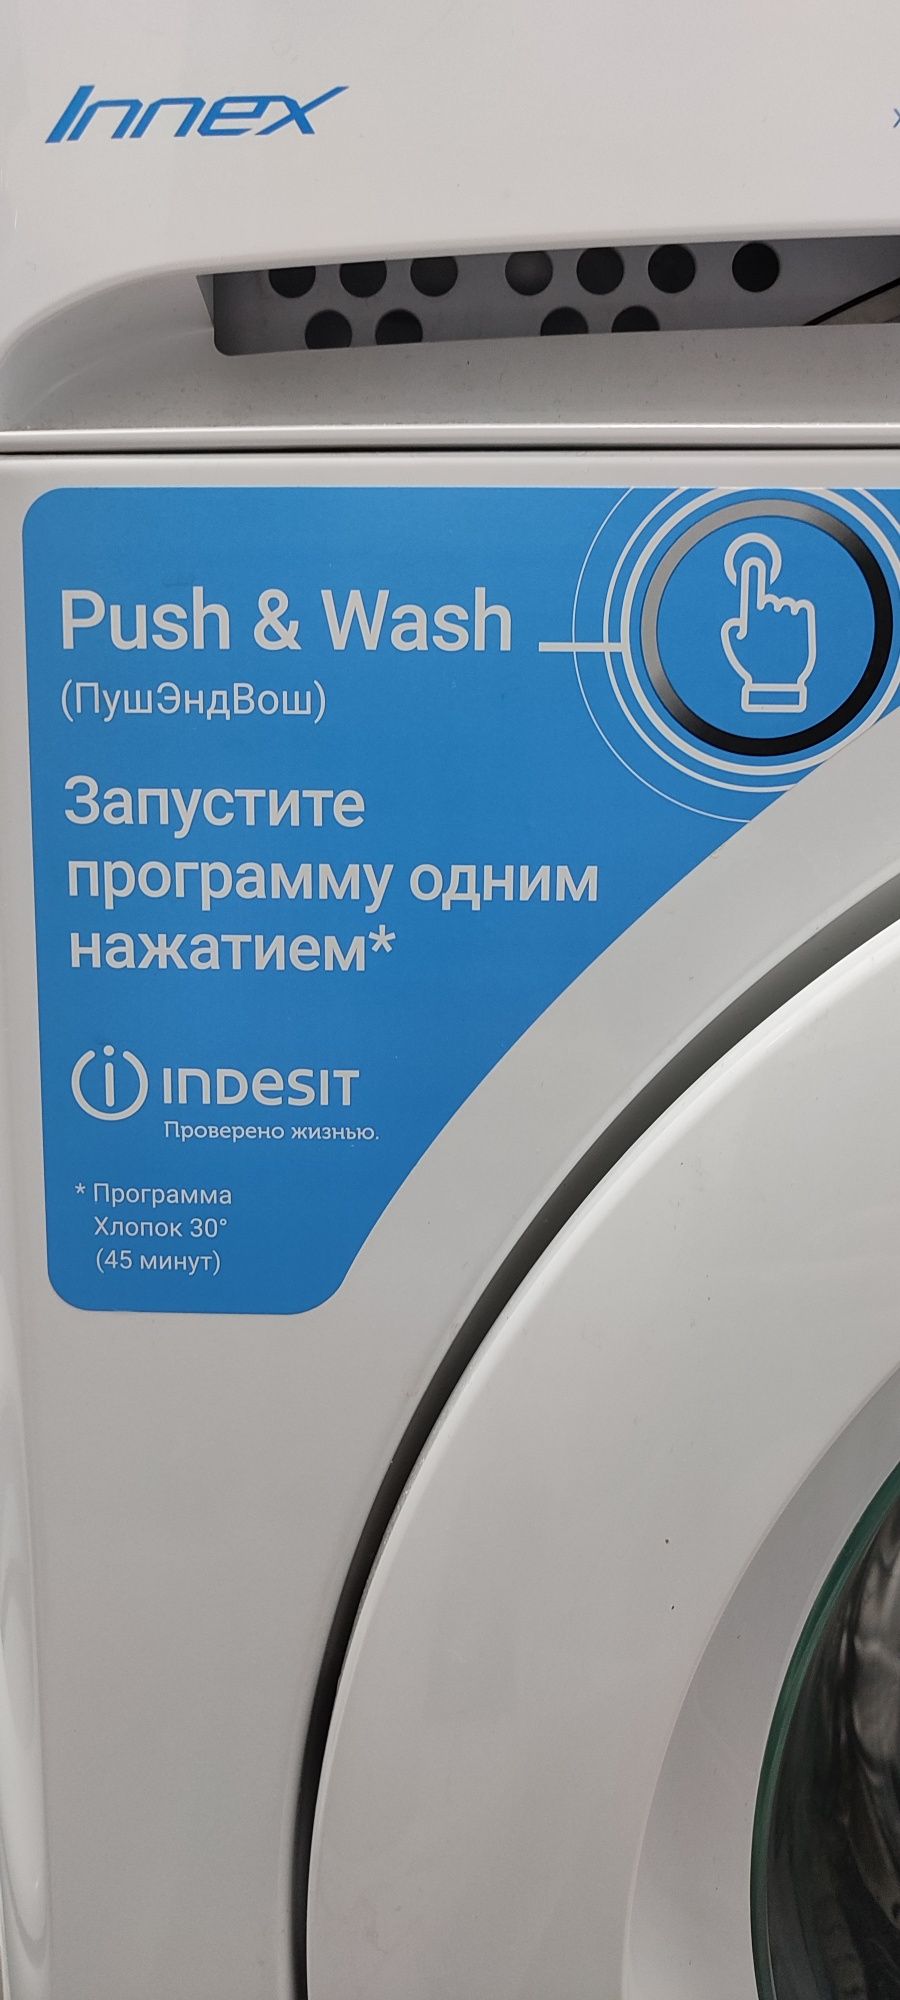 Продам стиральную машину Indesit